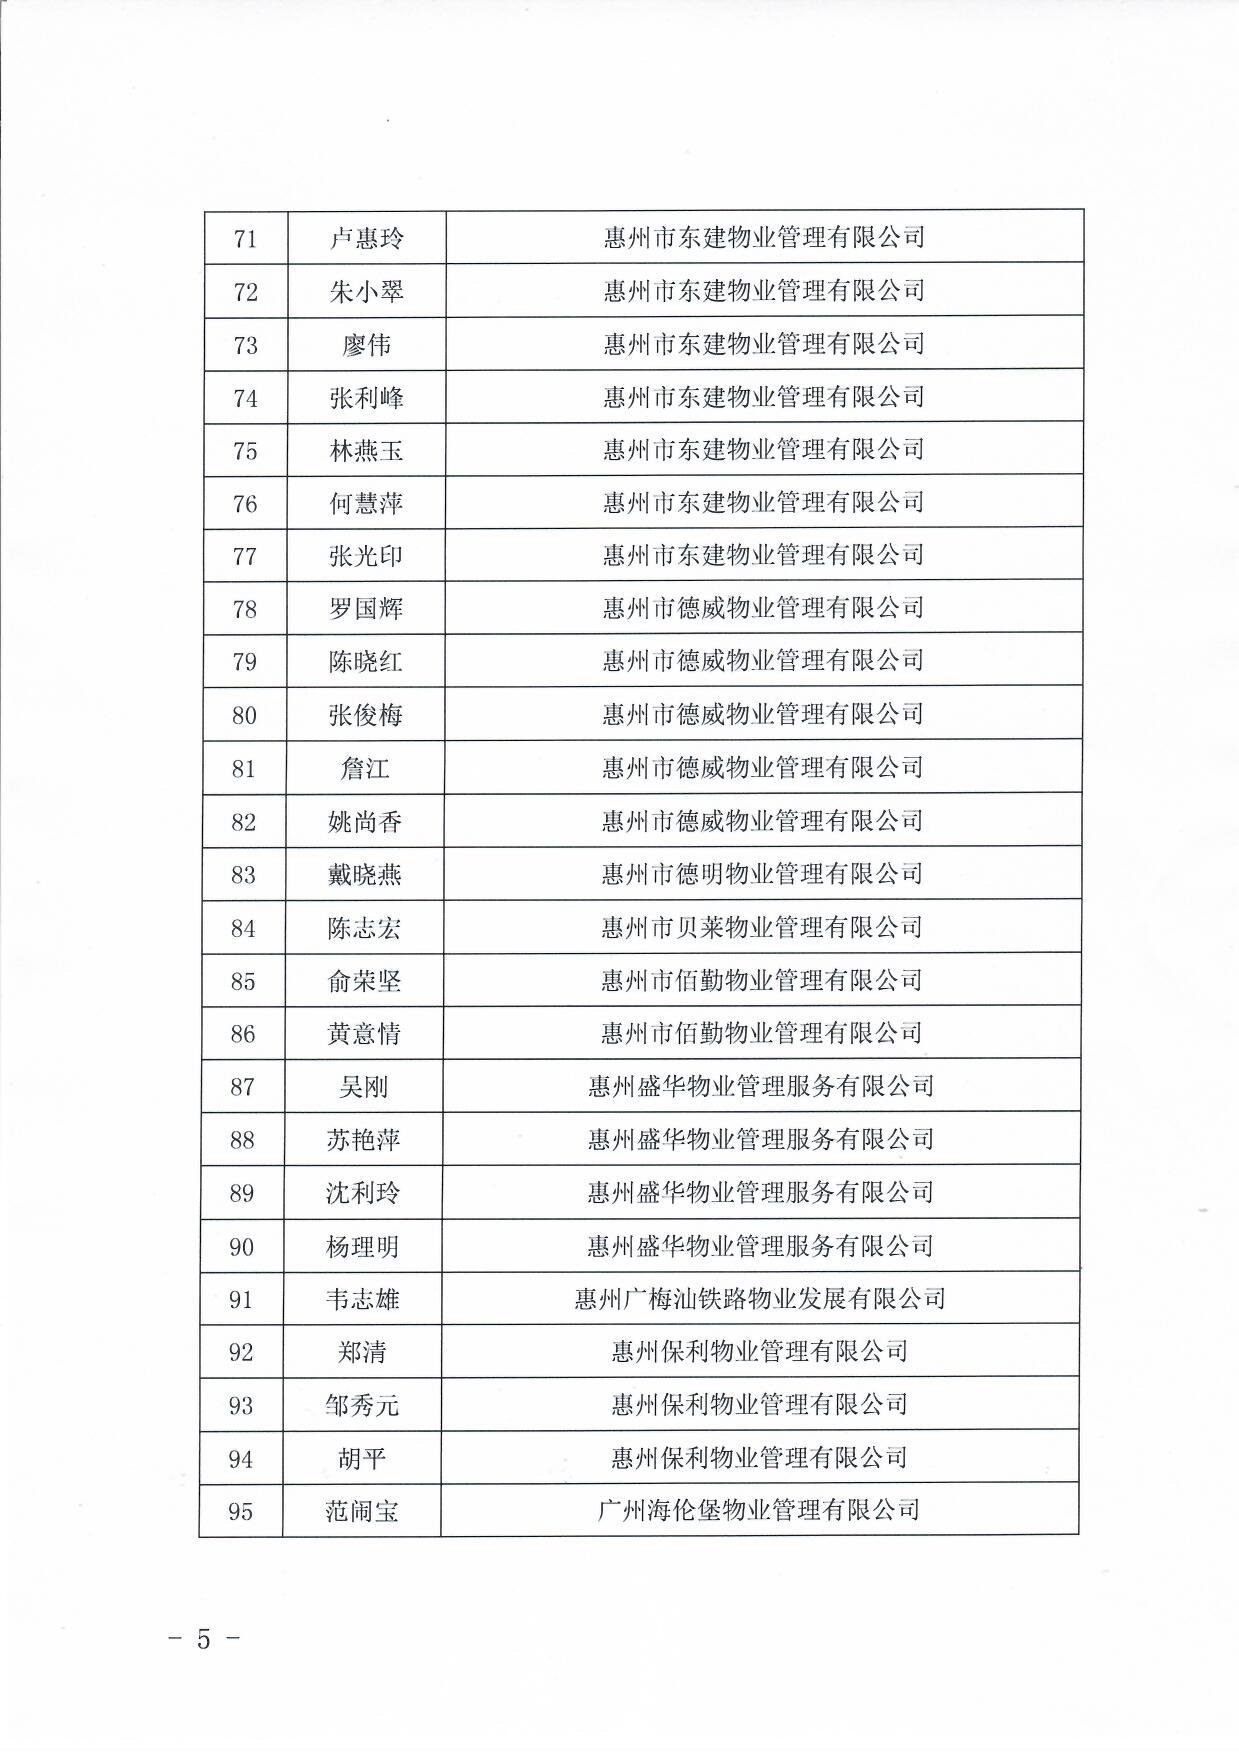 关于惠州市物业服务行业专家库入库成员名单的公告5.jpg